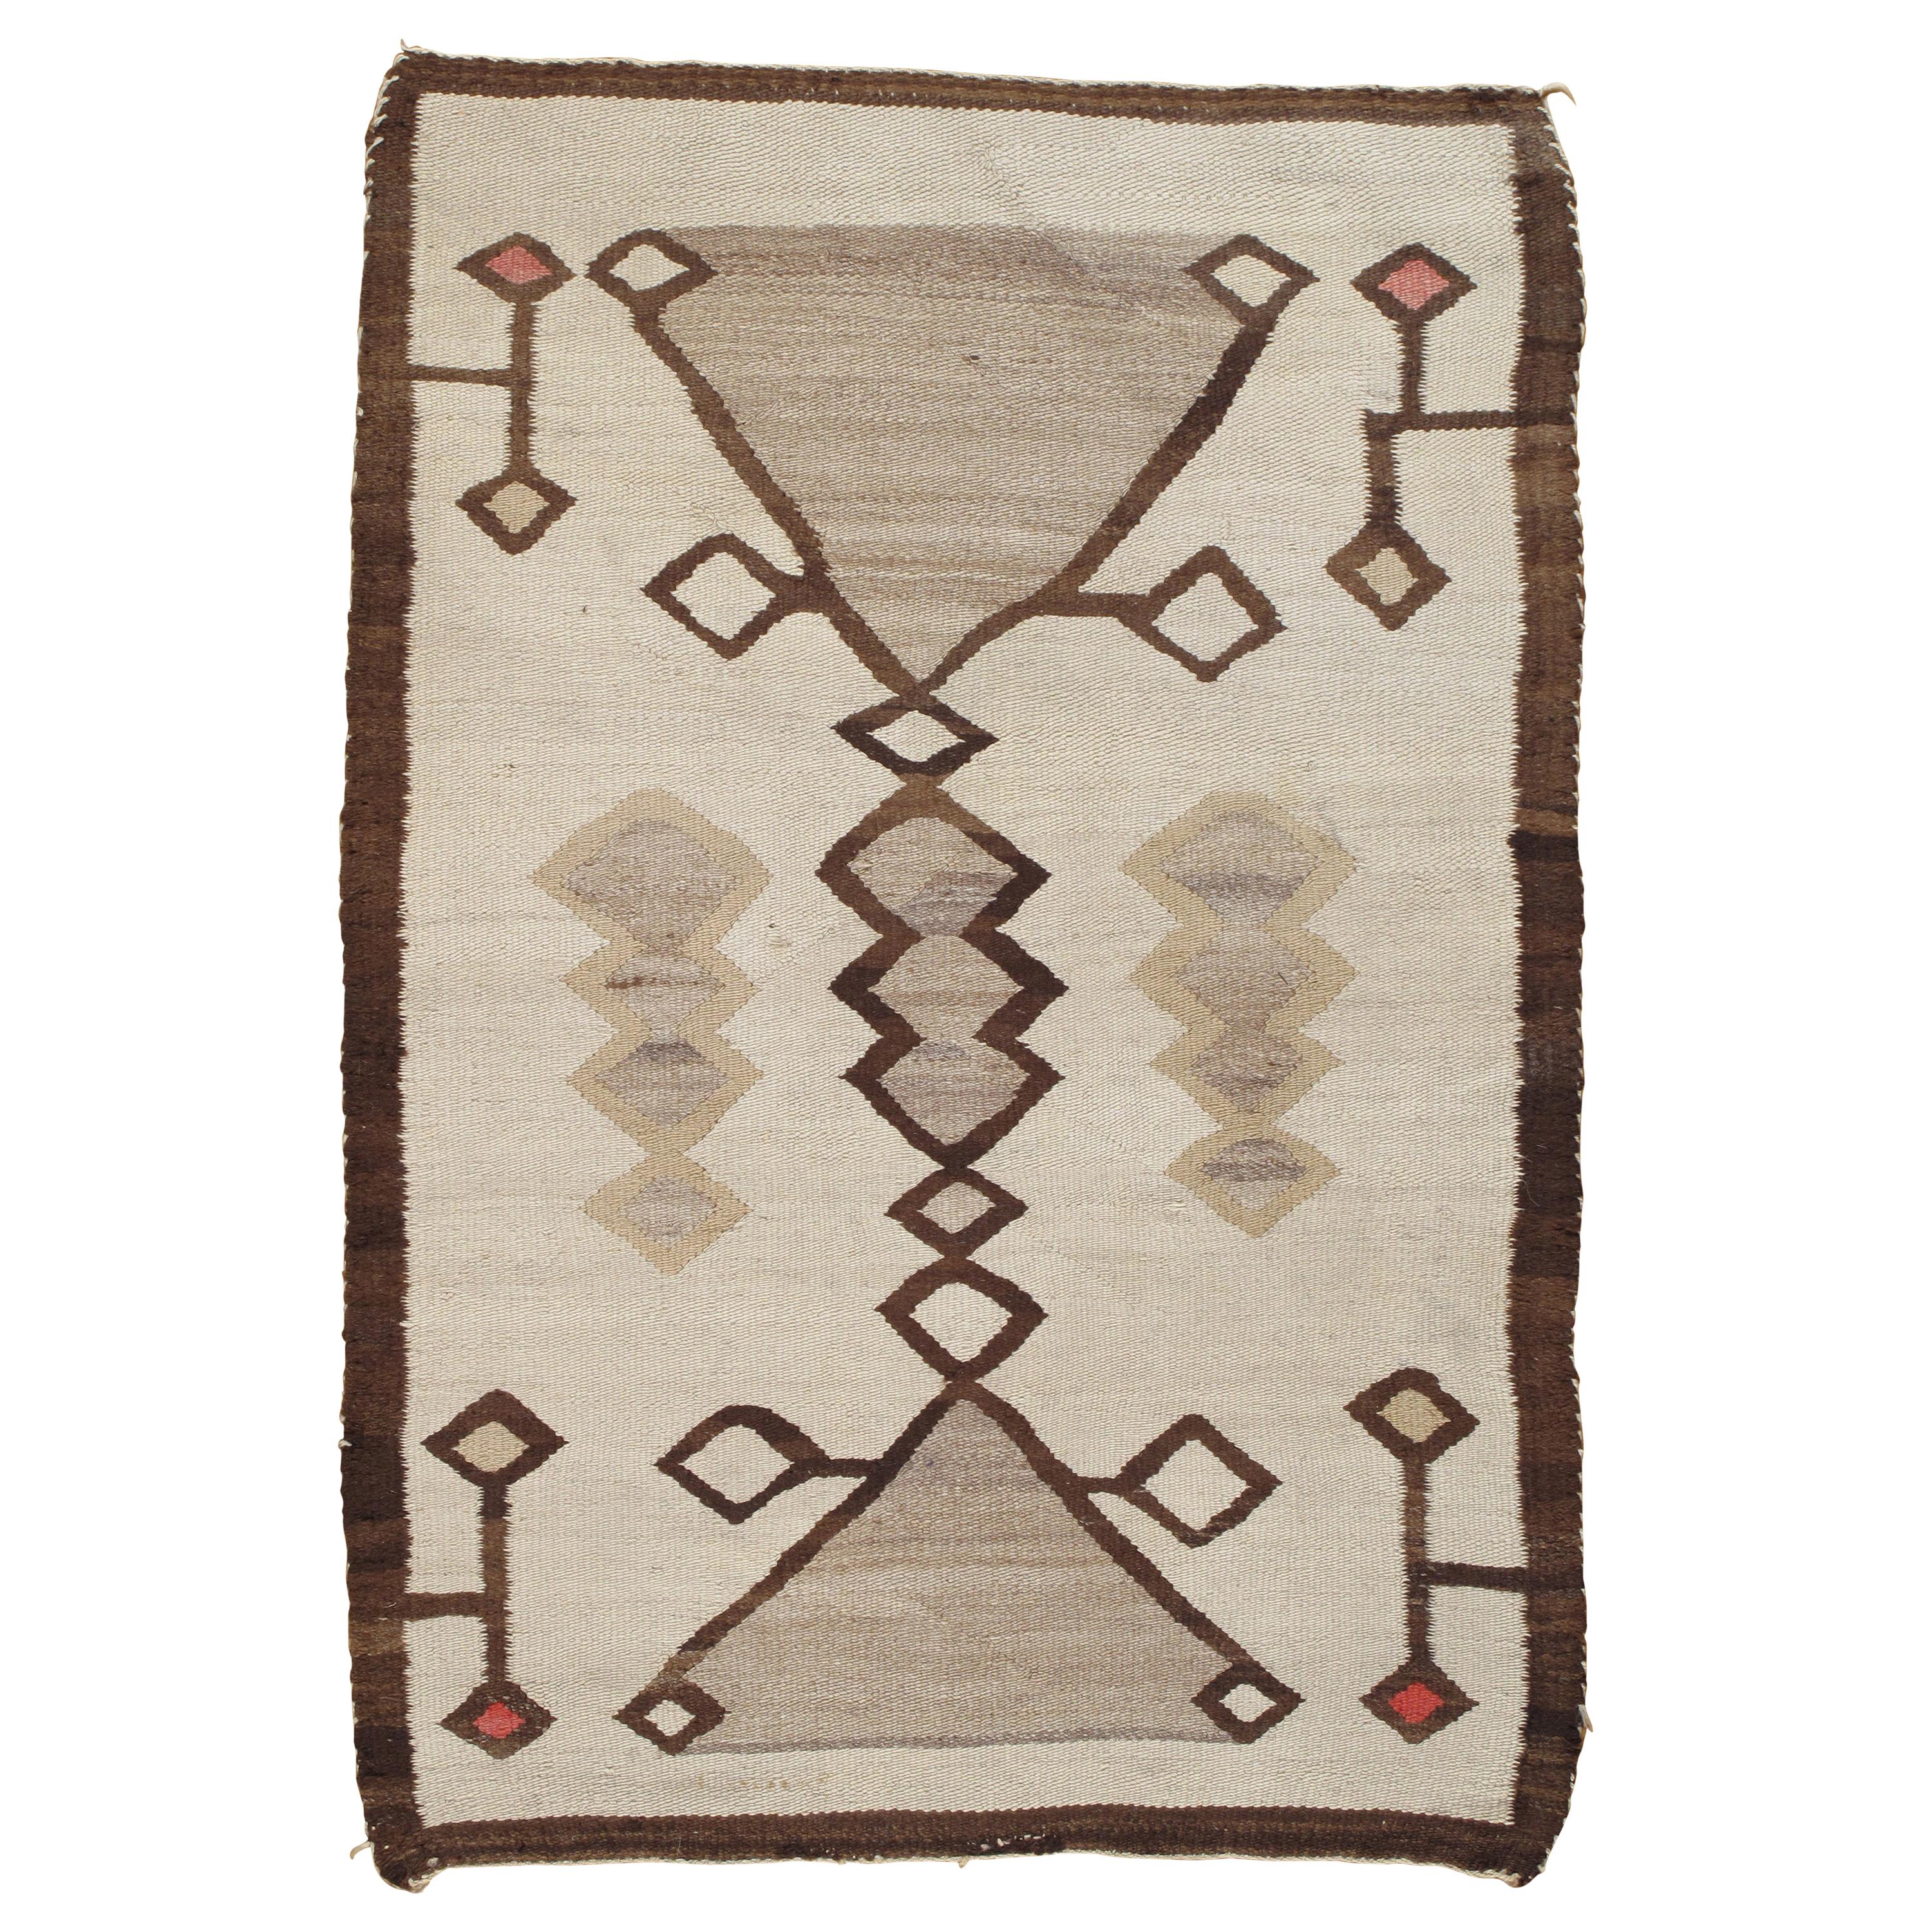 Antique Navajo Rug, Handmade Wool Oriental Rug, Caramel, Beige, Taupe and Brown